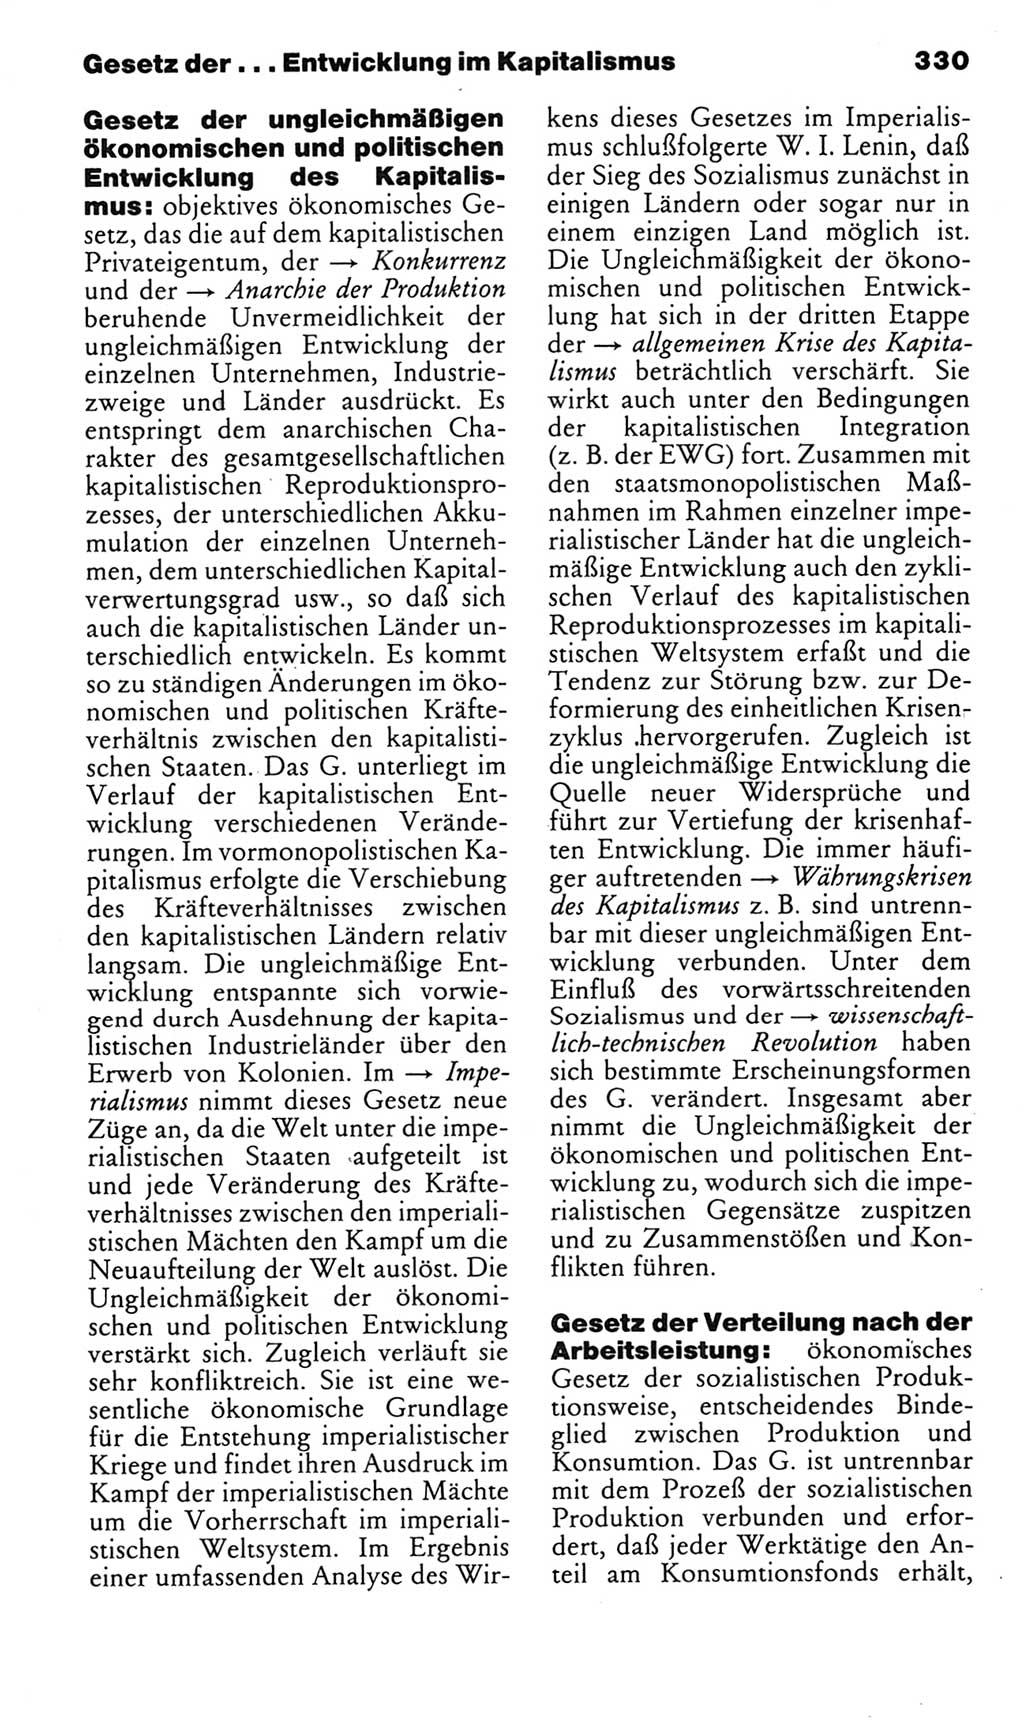 Kleines politisches Wörterbuch [Deutsche Demokratische Republik (DDR)] 1985, Seite 330 (Kl. pol. Wb. DDR 1985, S. 330)